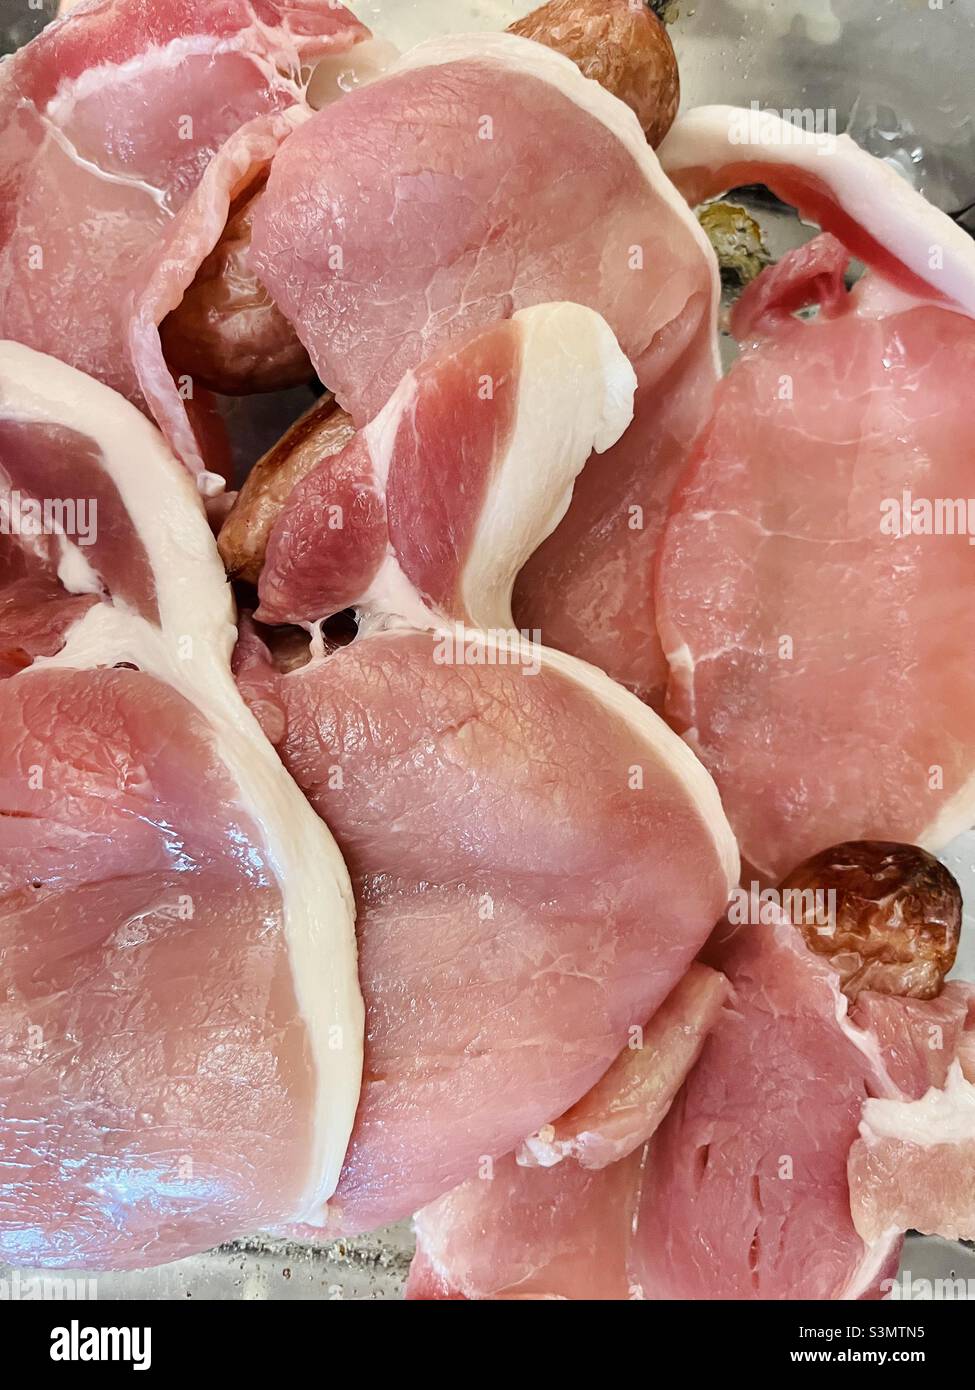 Lebensmittelstandards Gefahr - rohes Fleisch mit gekochtem Fleisch Stockfoto